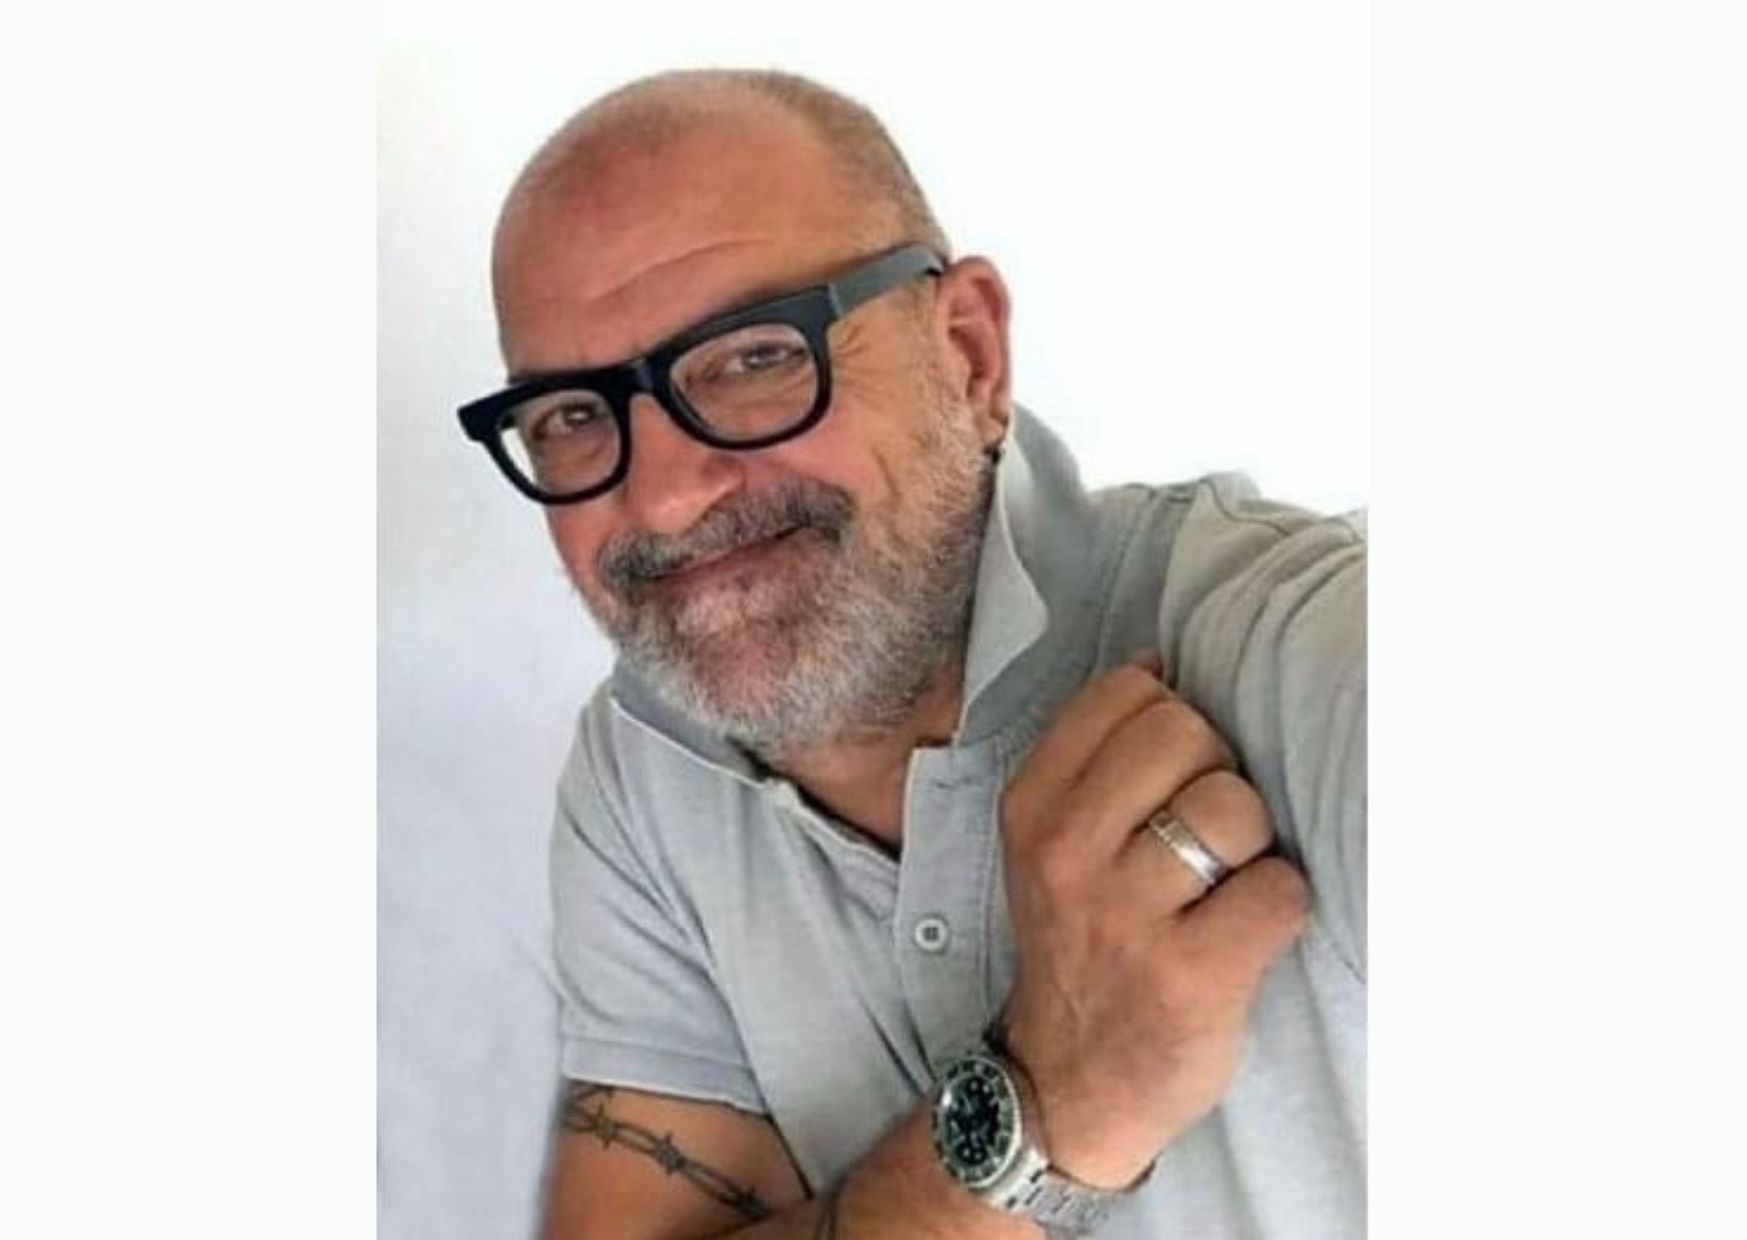 Ascoli Piceno – Muore a 54 anni per emorragia cerebrale, donati gli organi di Mario Blasi